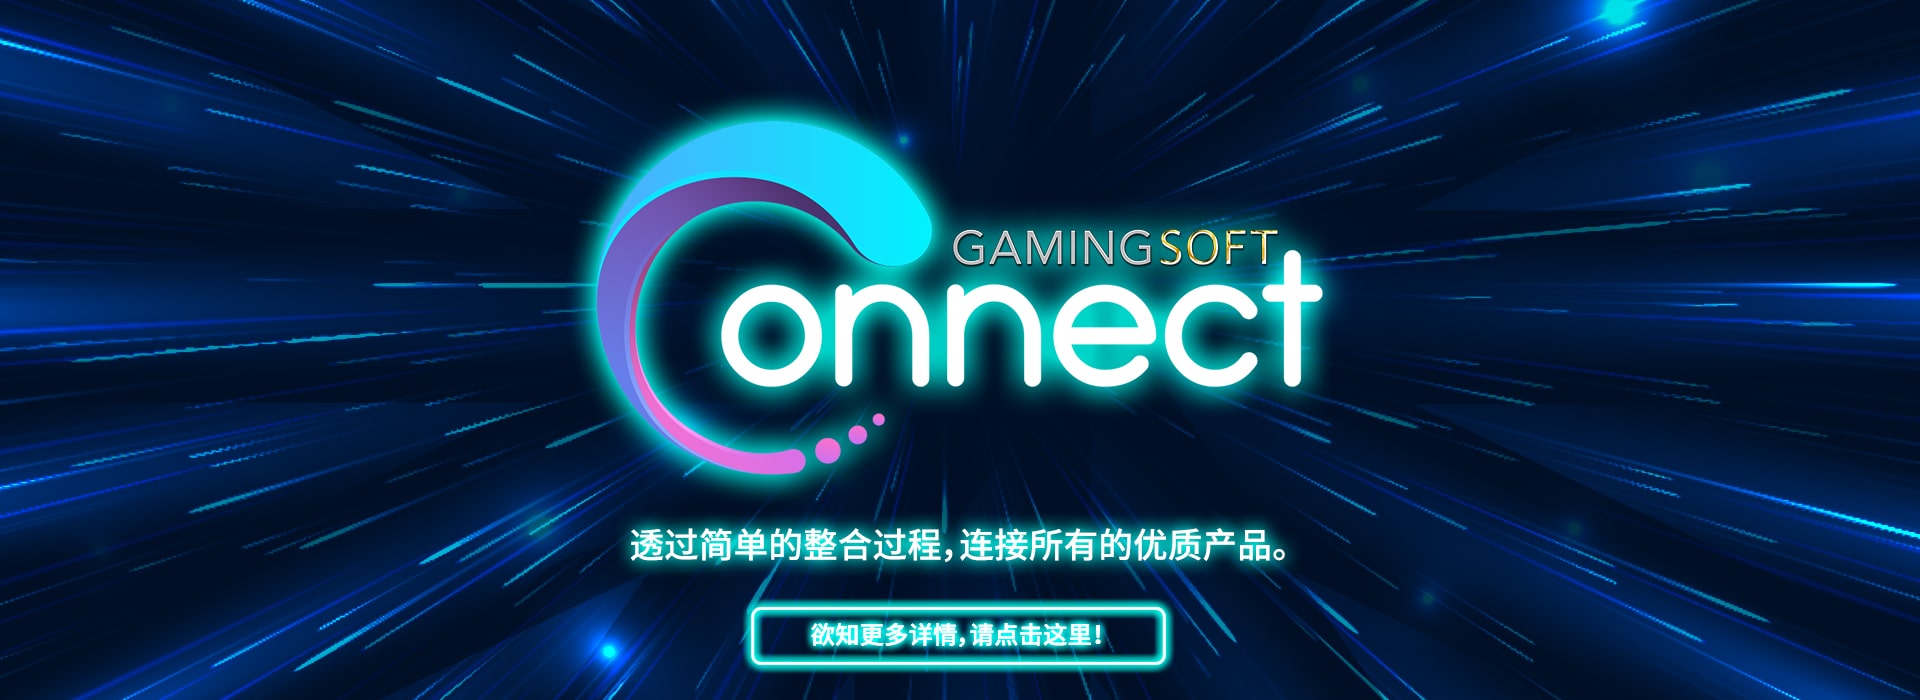 博彩游戏整合方案 - 乐游国际GamingSoft Connect